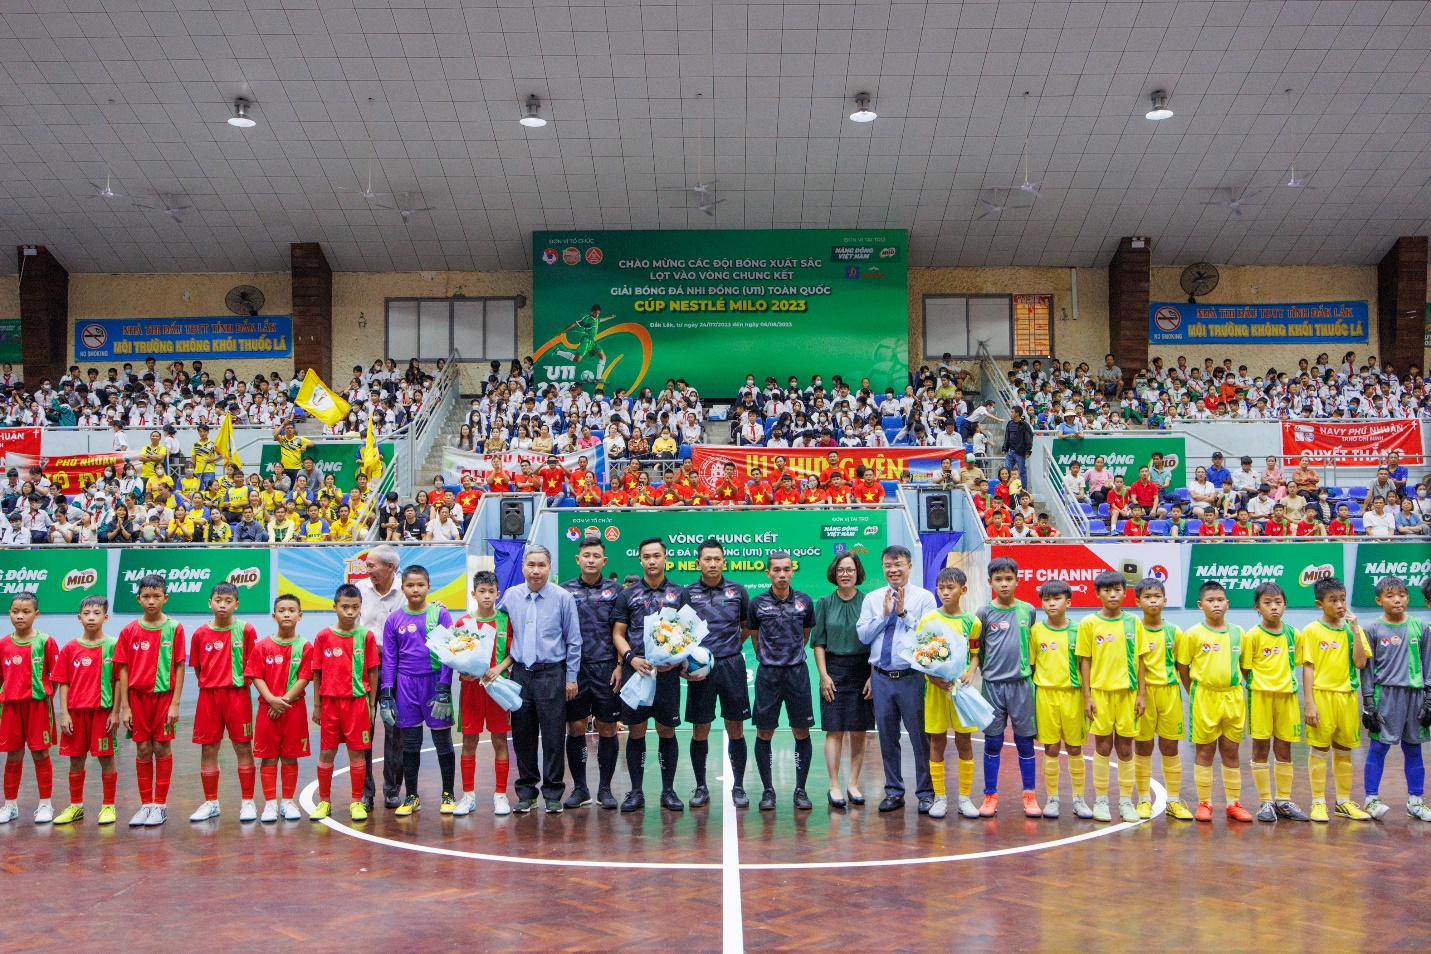 Bế mạc giải bóng đá nhi đồng (U11) toàn quốc, Nestlé MILO trao tặng 16 học bổng “Có chí thì nên” - Ảnh 1.